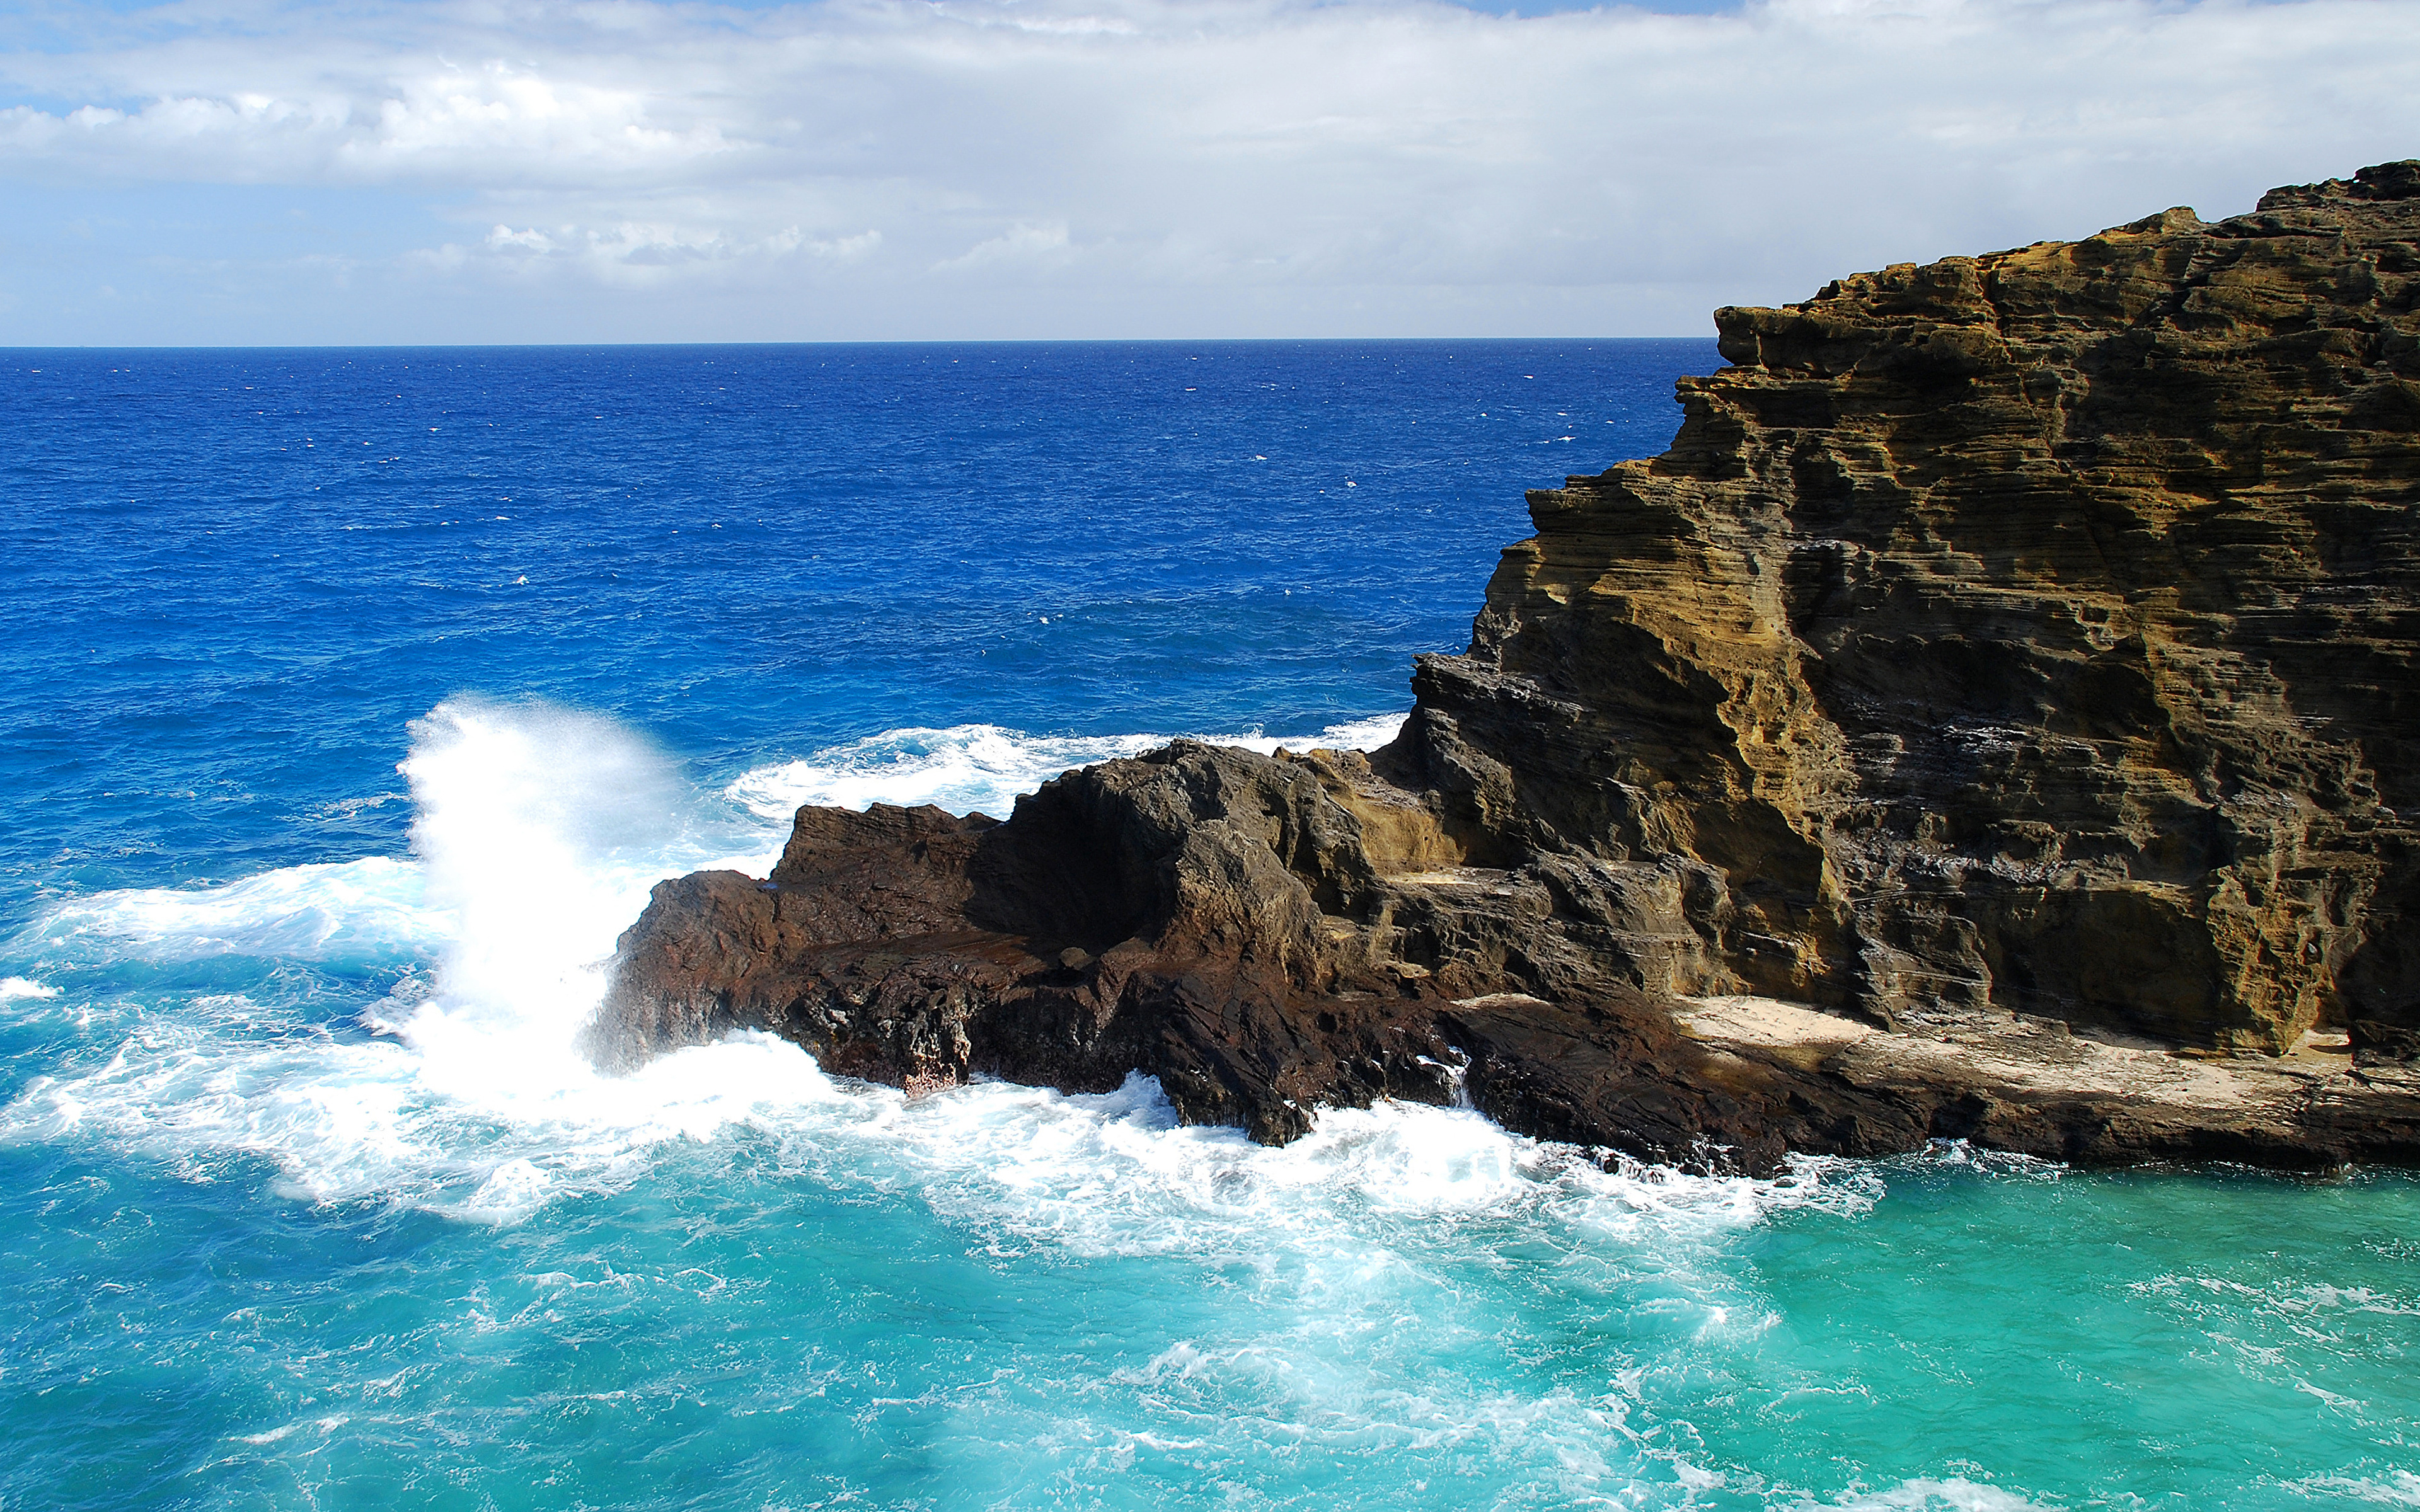 Обои виде моря. Скалы омываемые морем. Скалы омываемые волнами. Море рифы скалы волны. Мокрые скалы море.